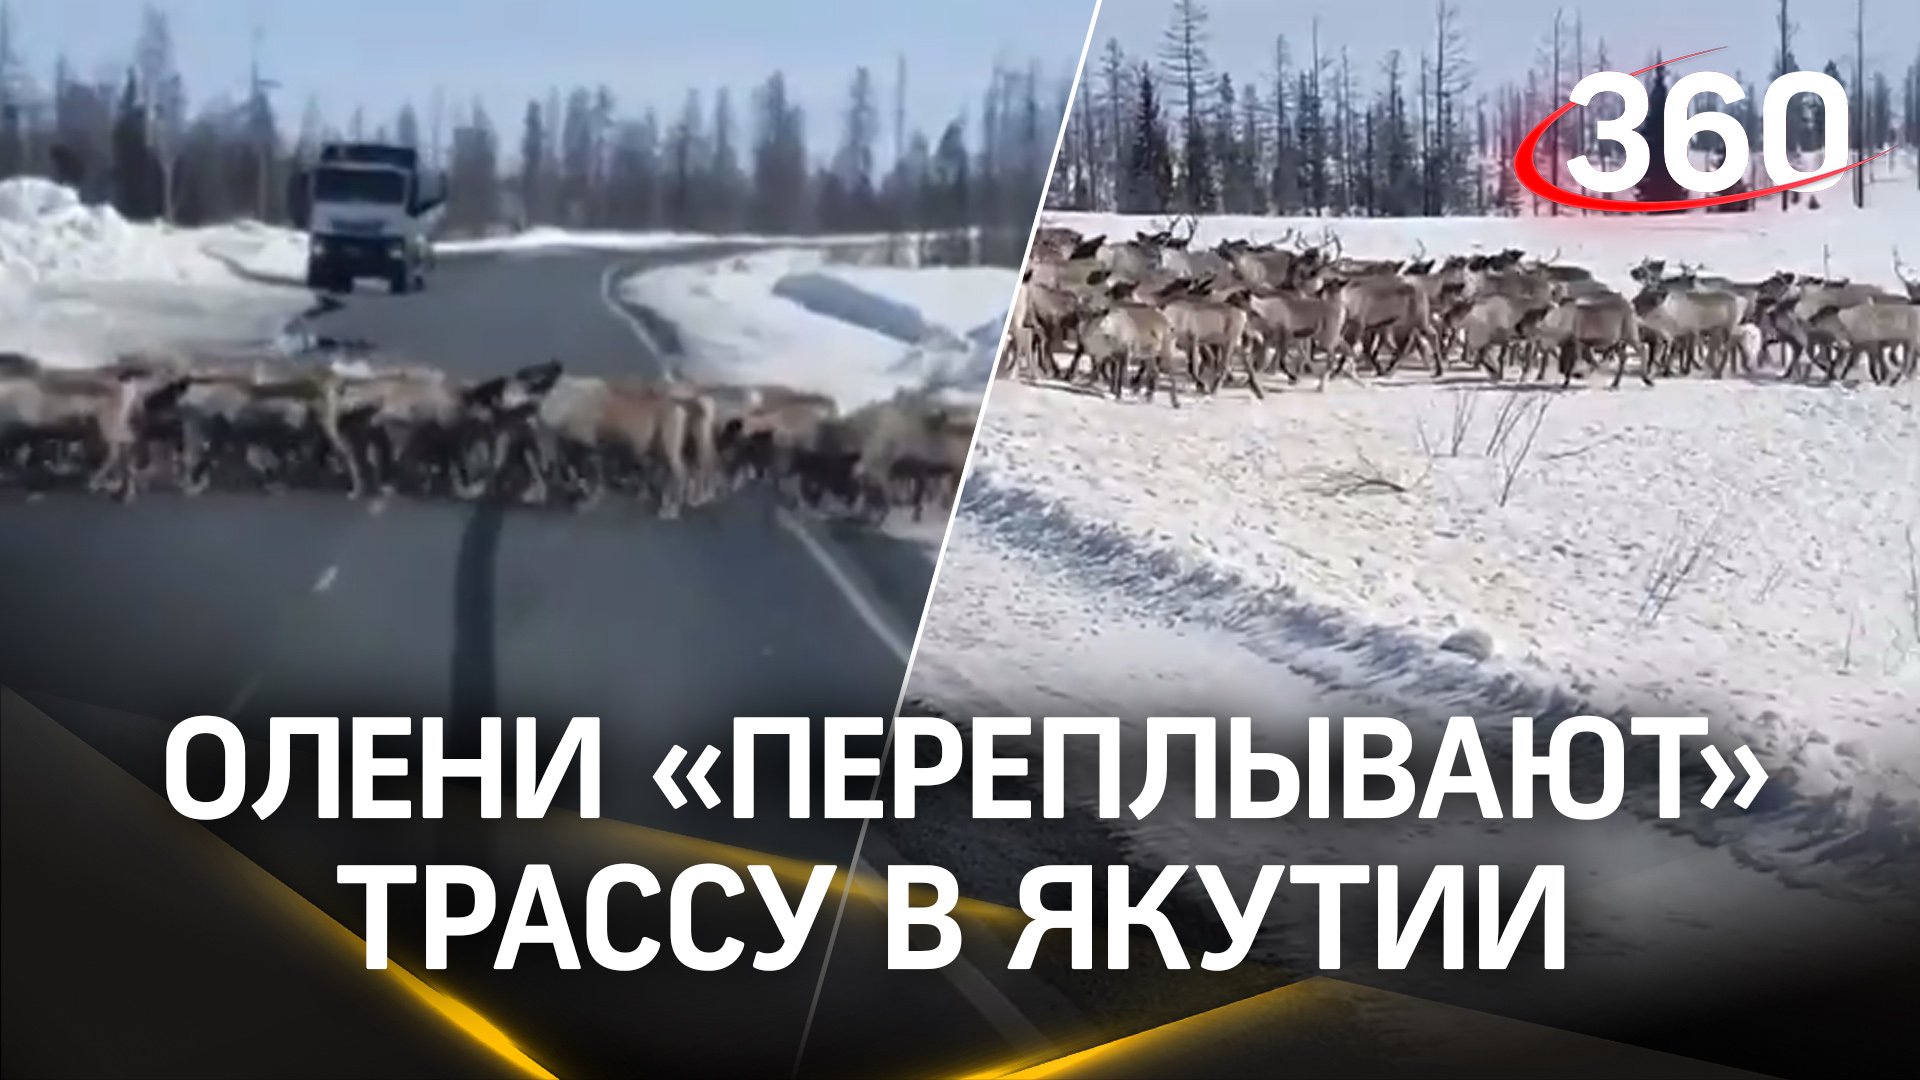 Река из оленей в Якутии: животные перекрыли трассу, их перегоняют на новые пастбища